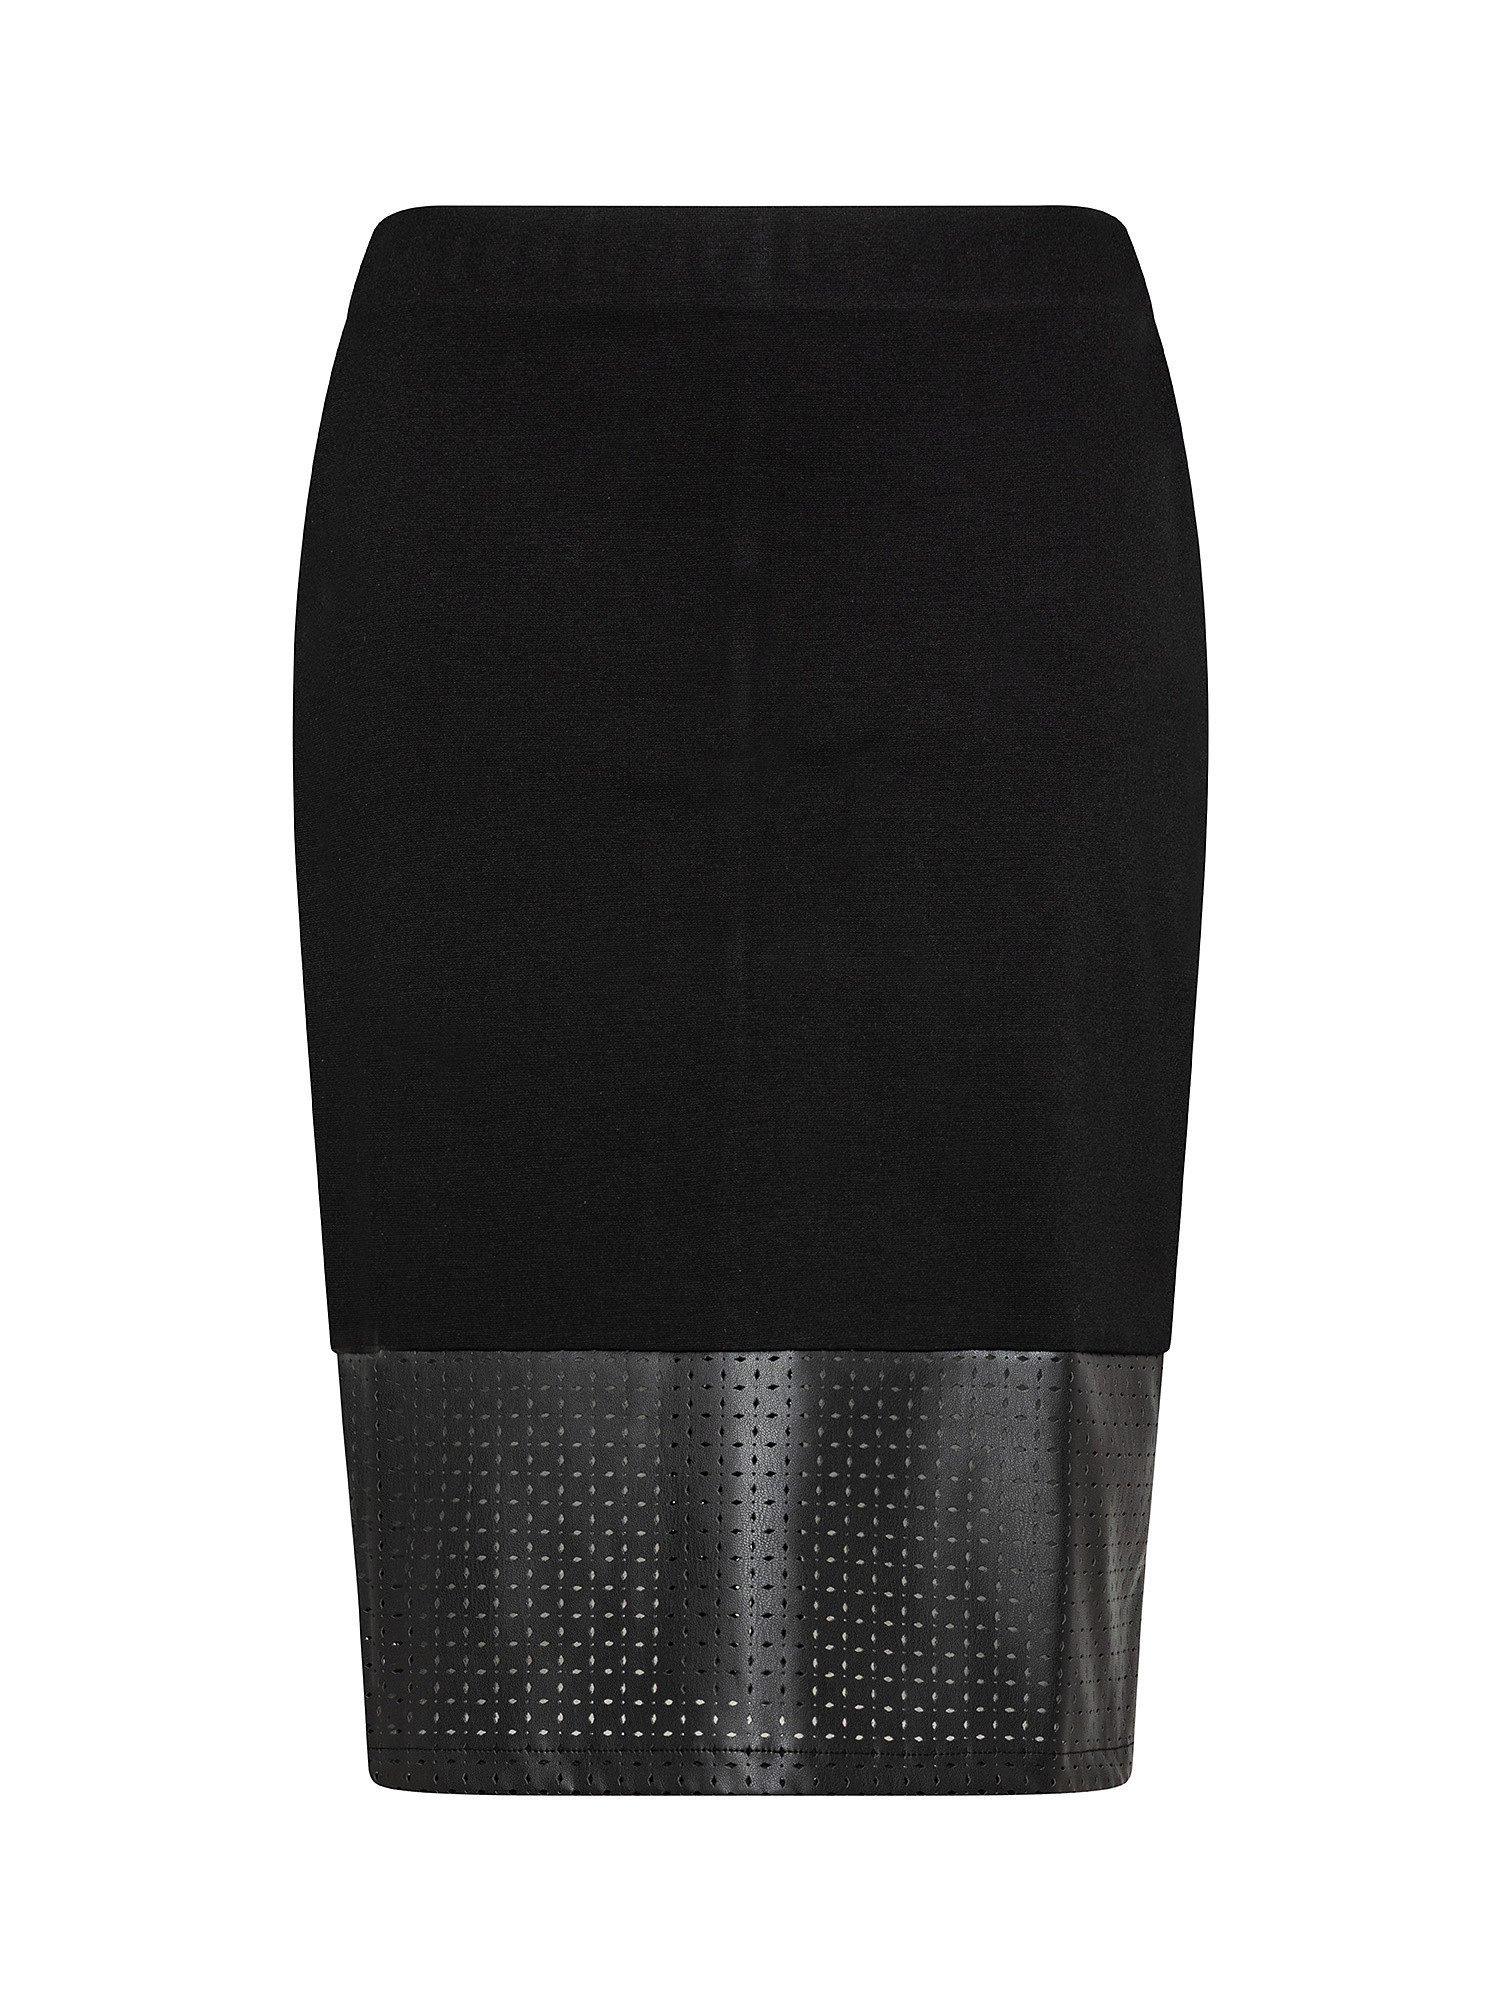 Koan - Patterned skirt, Black, large image number 0